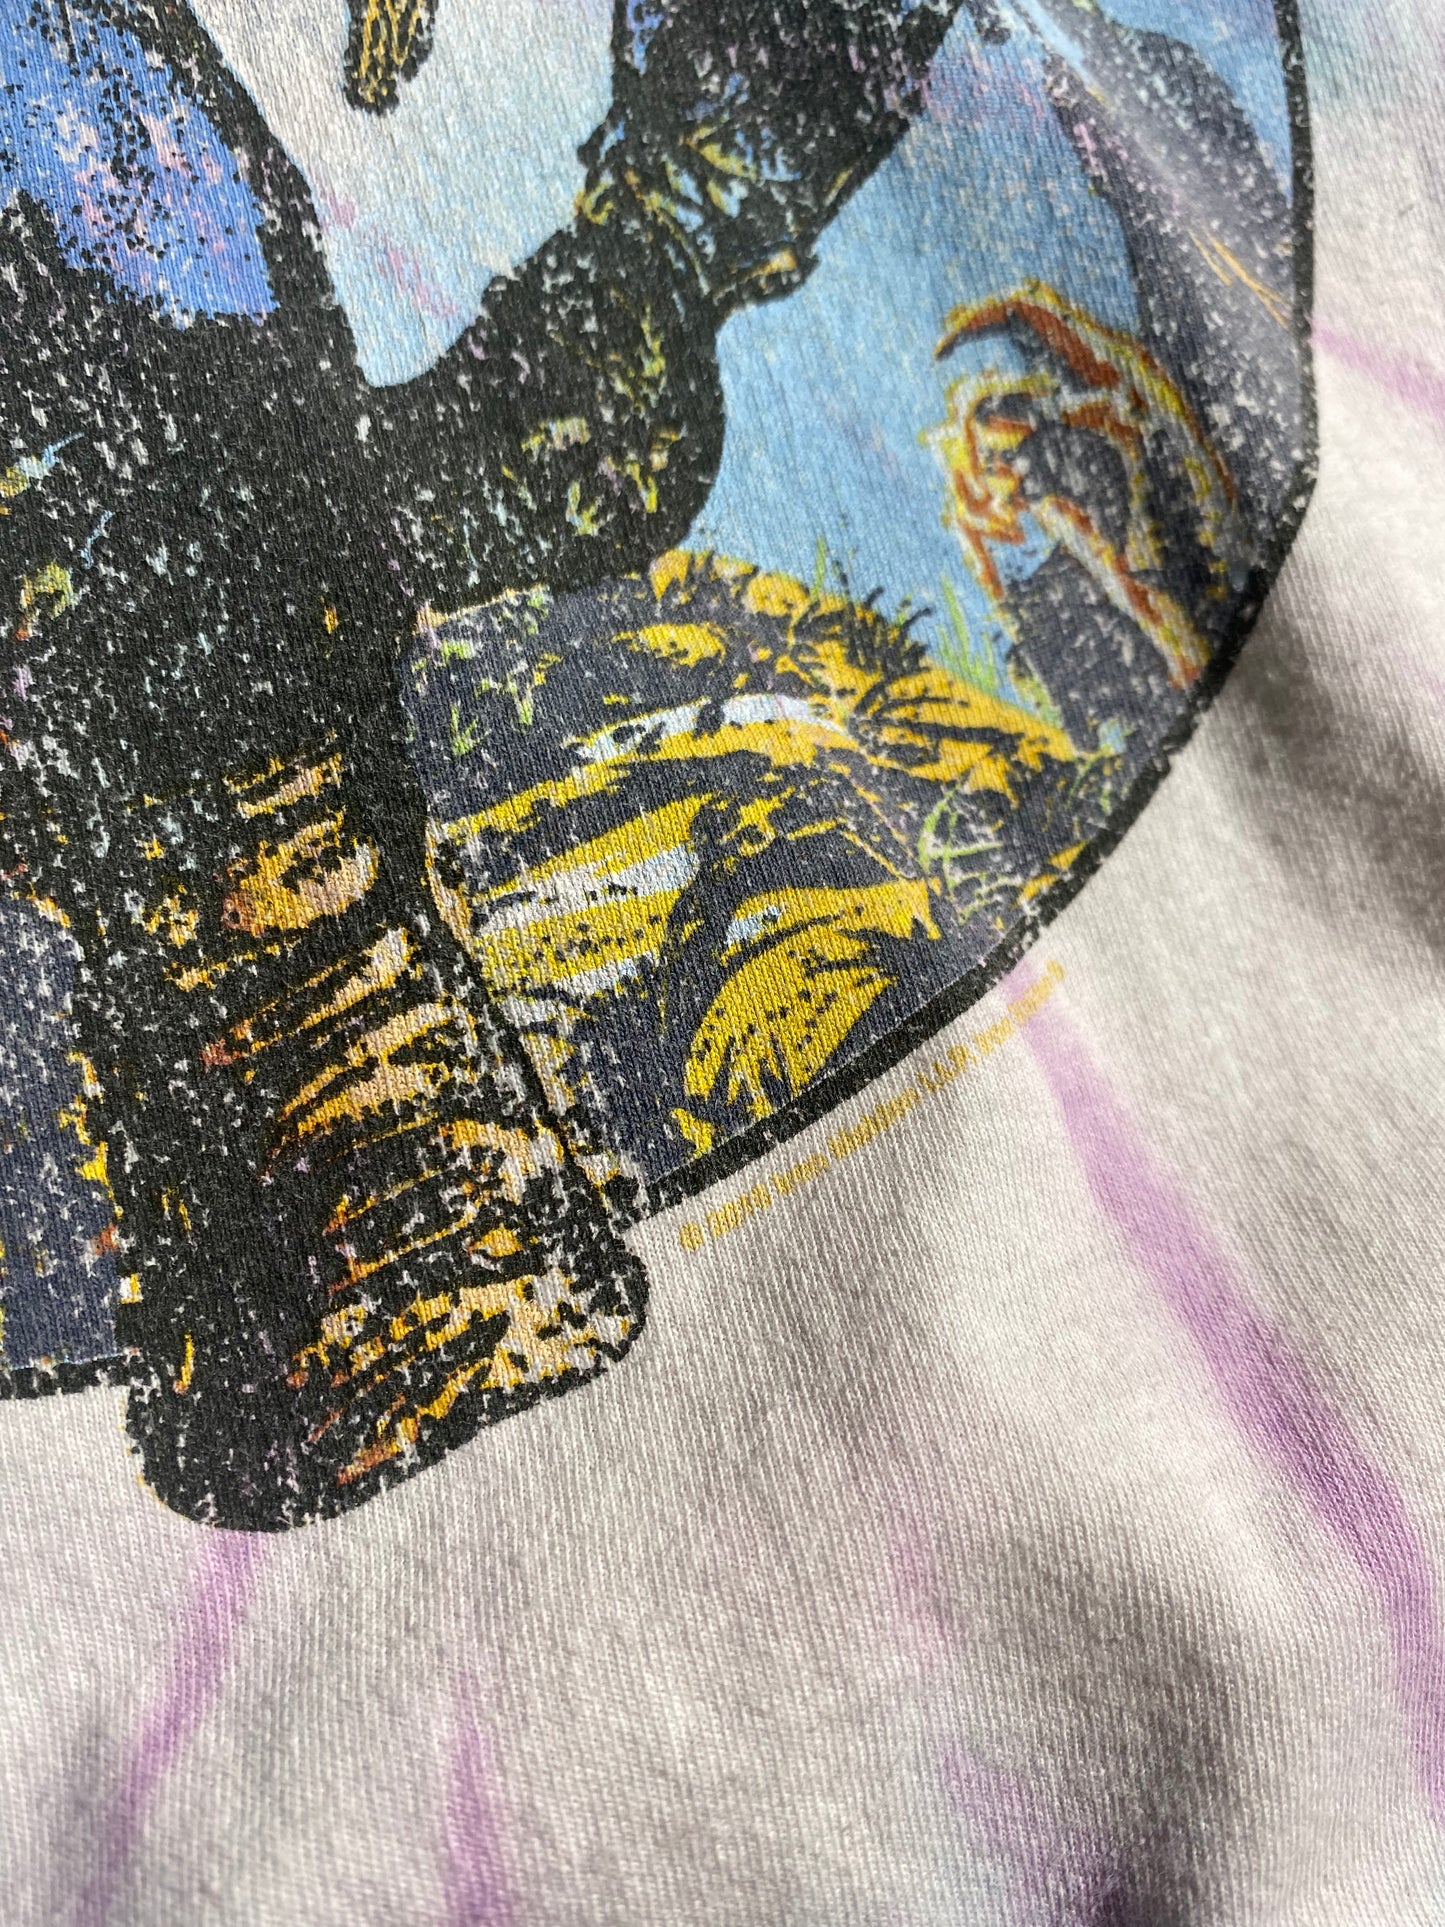 Vintage Iron Maiden T-Shirt Tie Dye